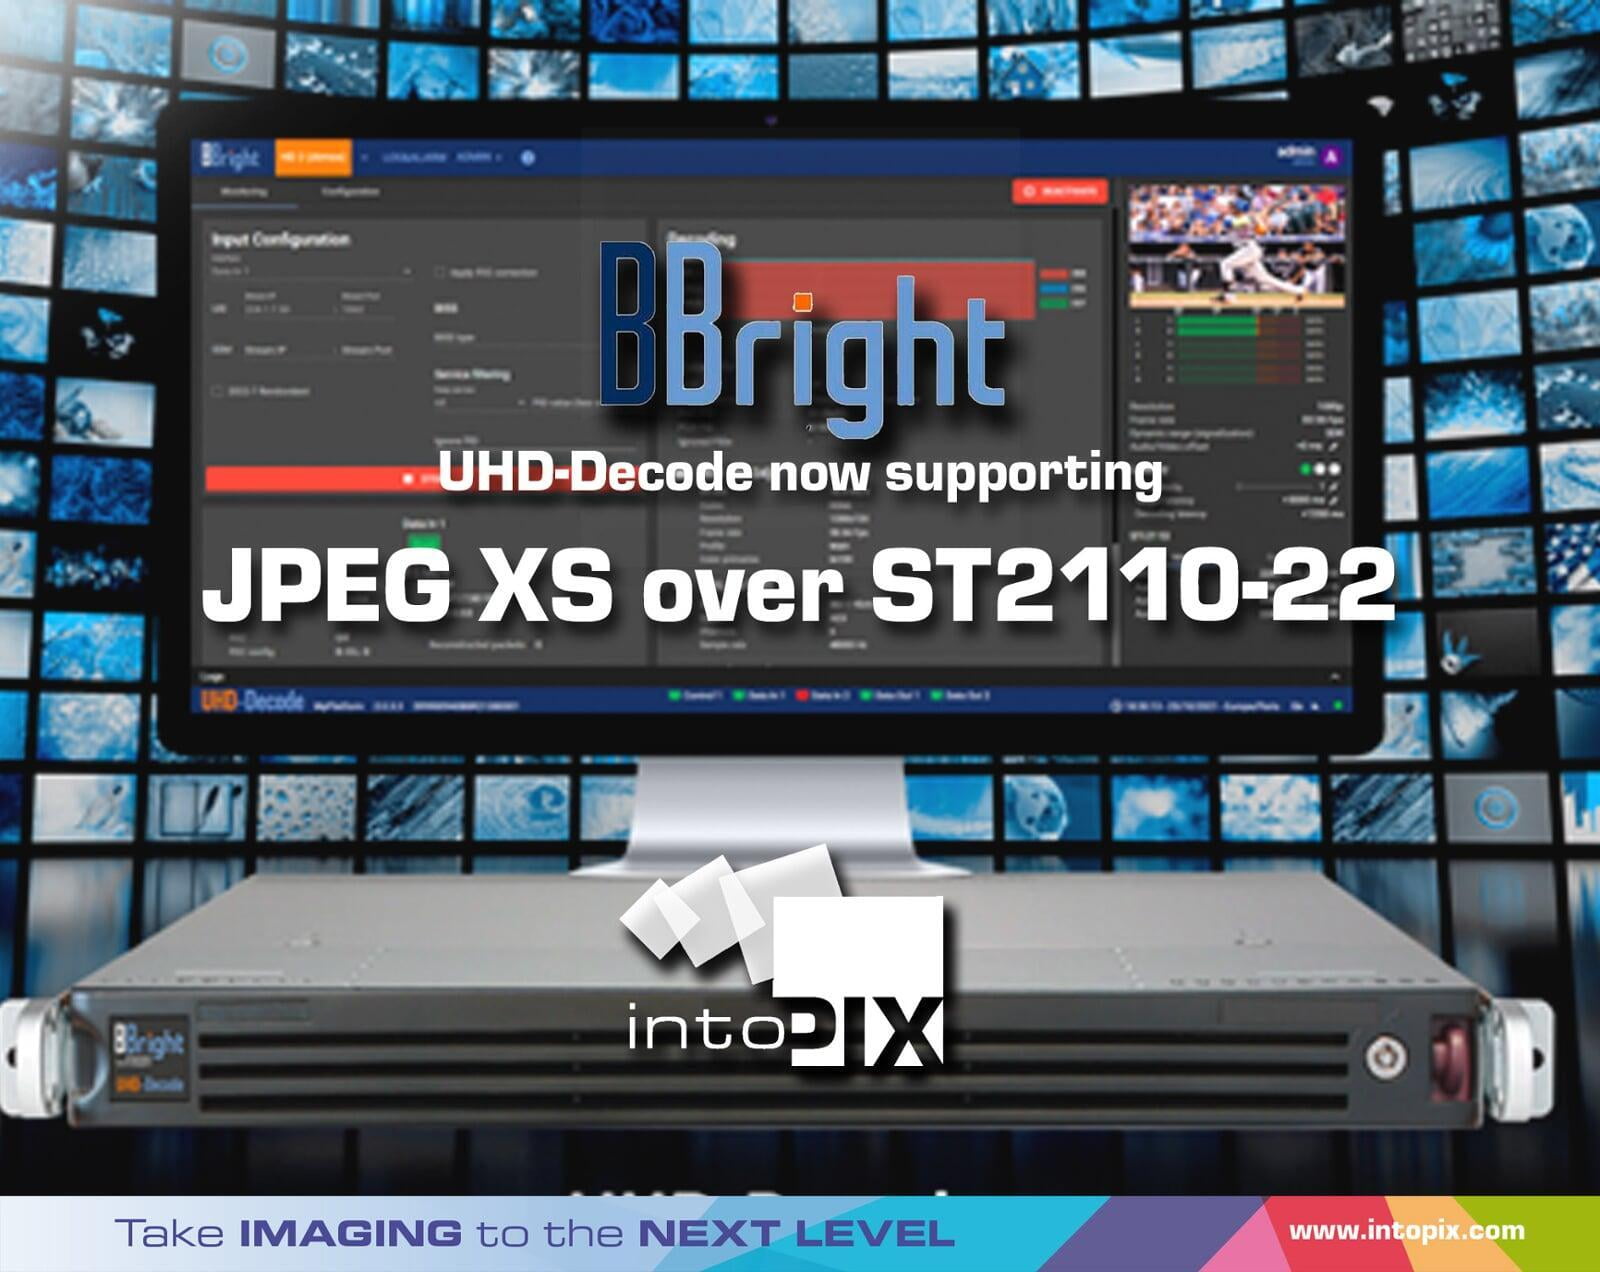 BBright 超高清媒體閘道集成 intoPIX JPEG XS技術 